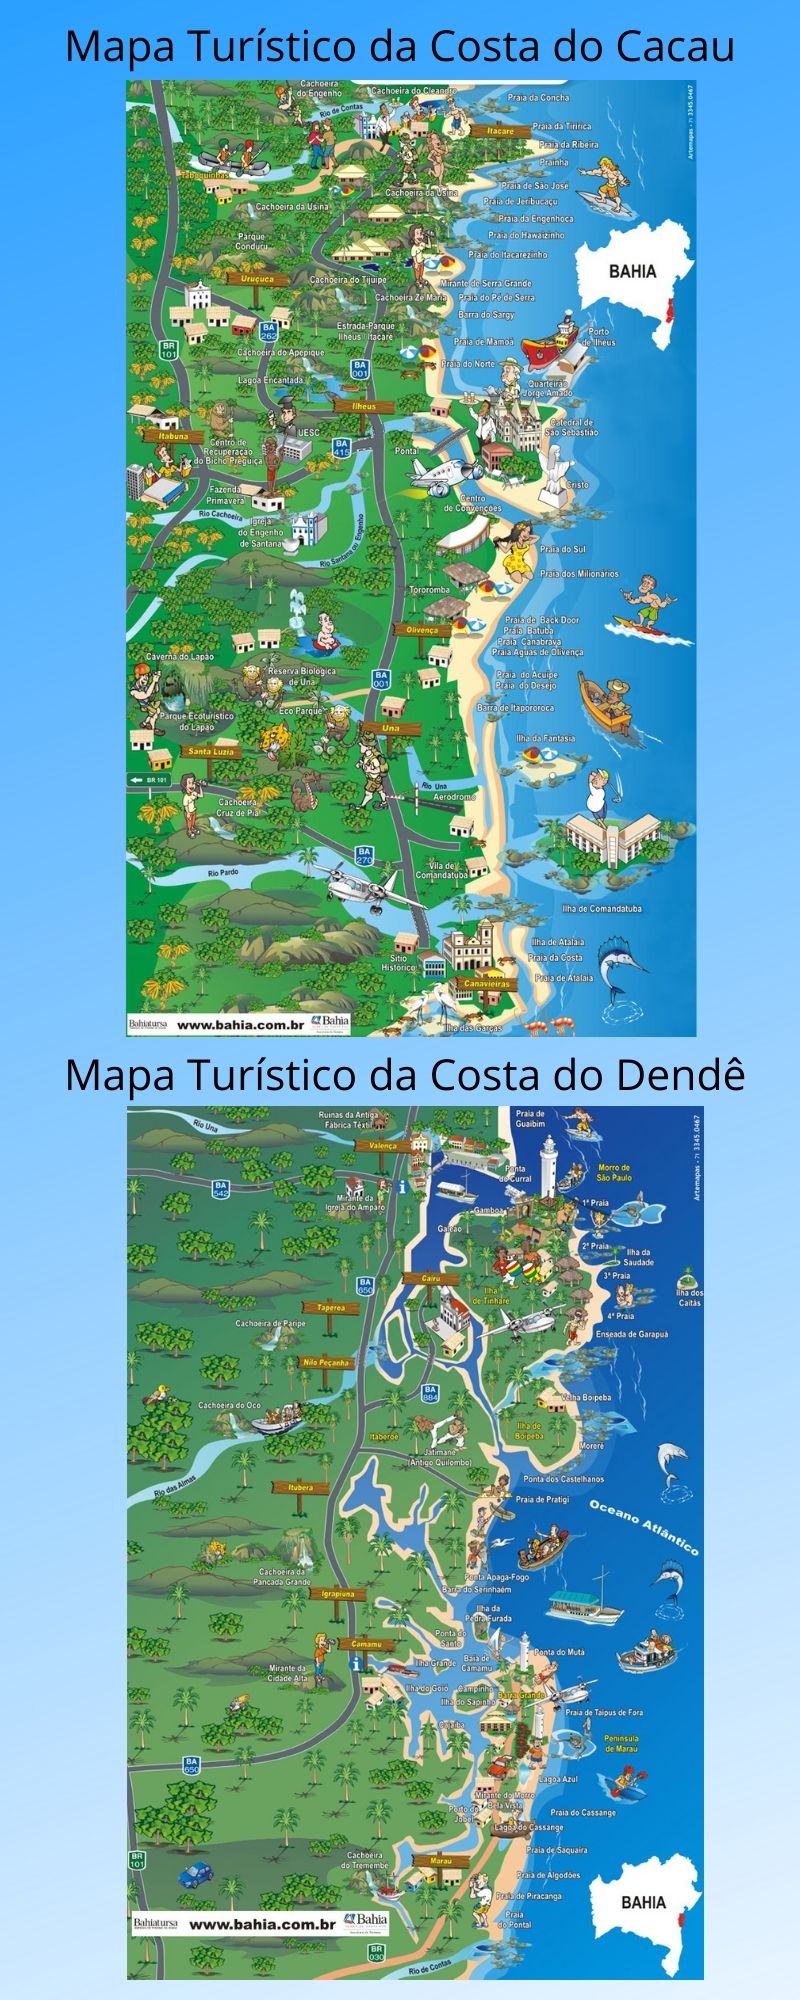 Infográfico Atrações Turísticas da Bahia (Costa do Cacau e Costa do Dendê)2